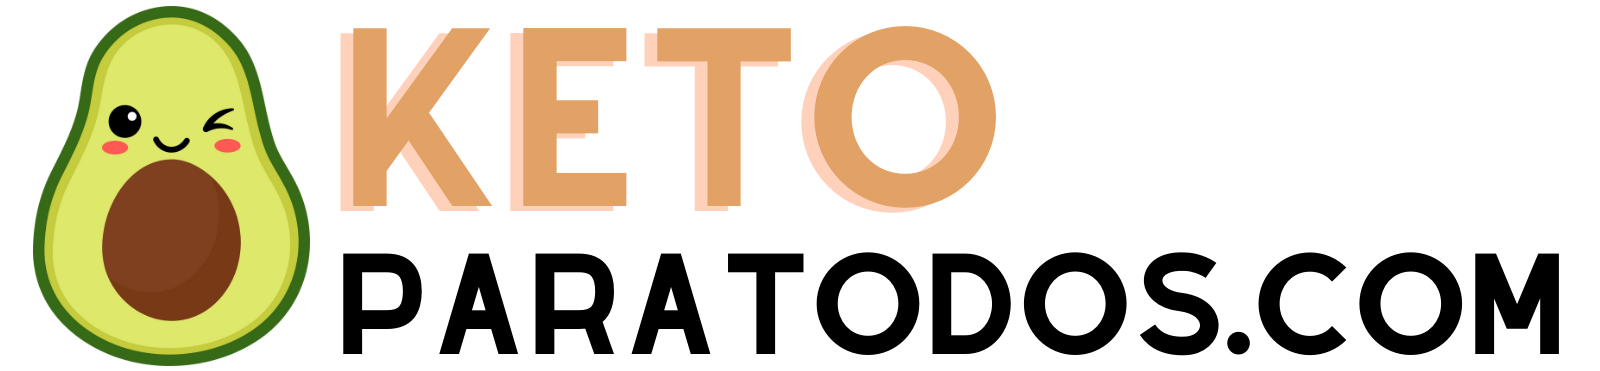 KetoParaTodos.com